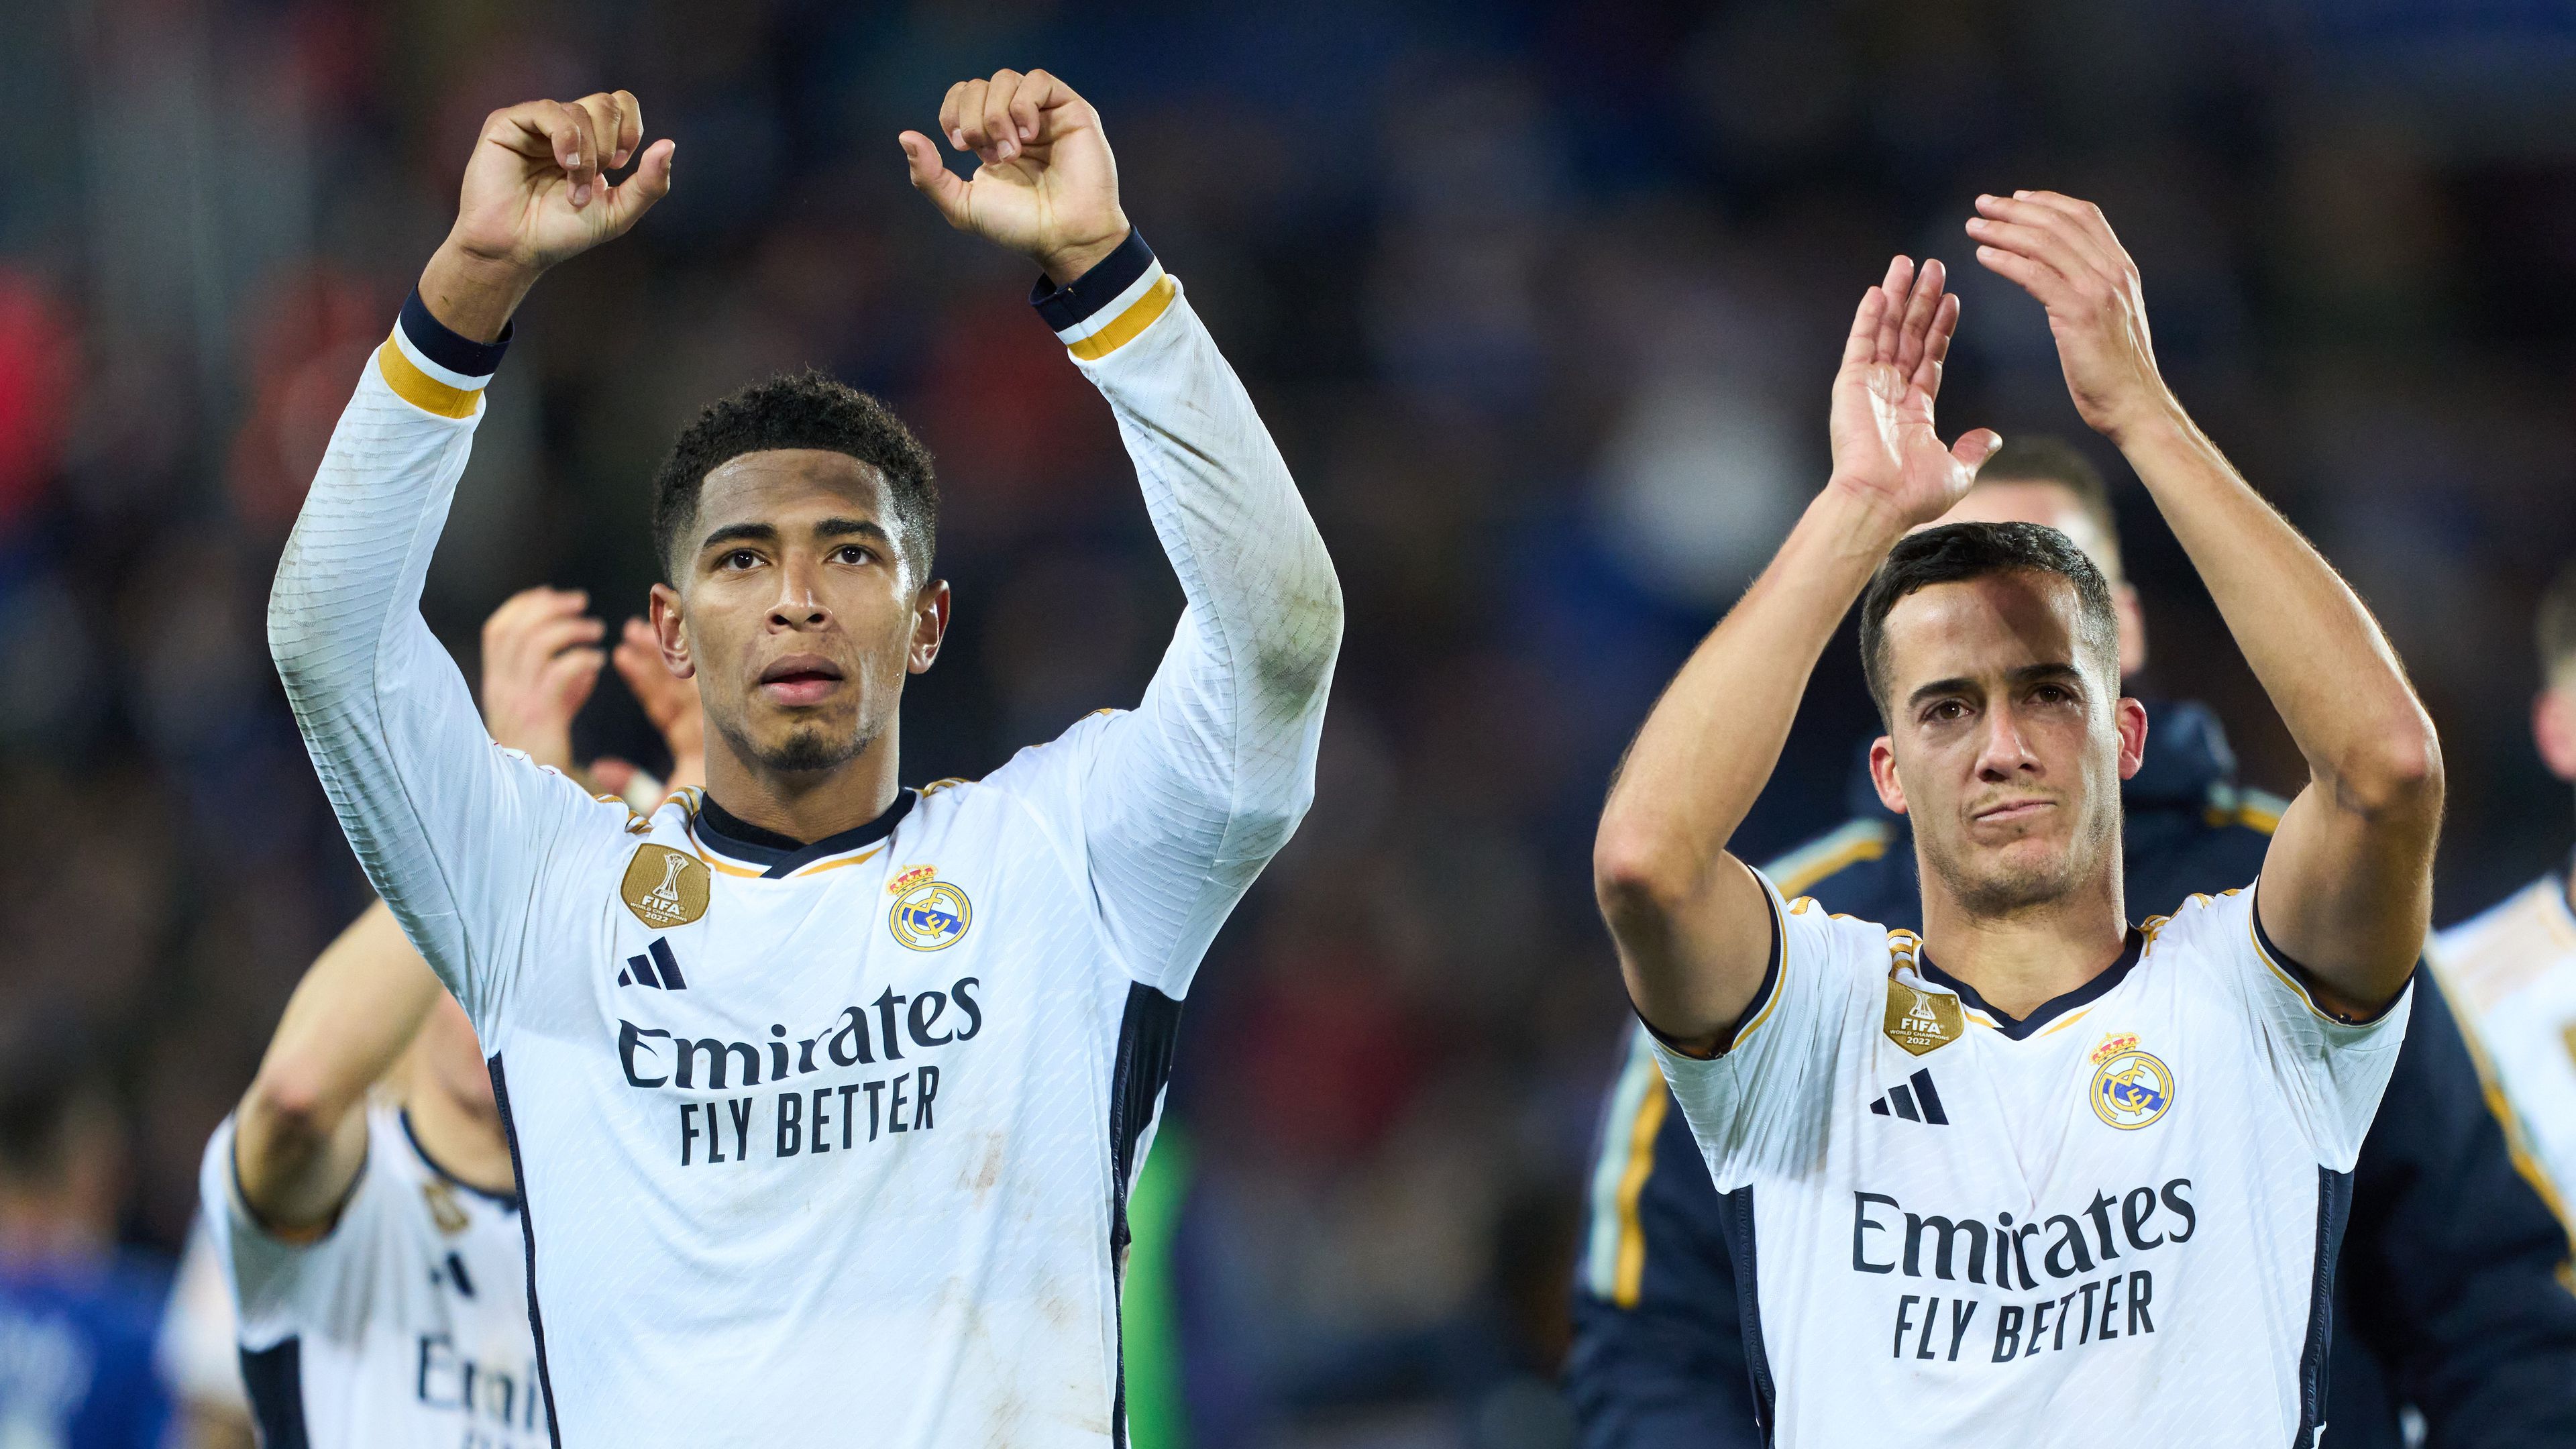 Újabb sérülés, hetekre kidőlt a Real Madrid játékosa